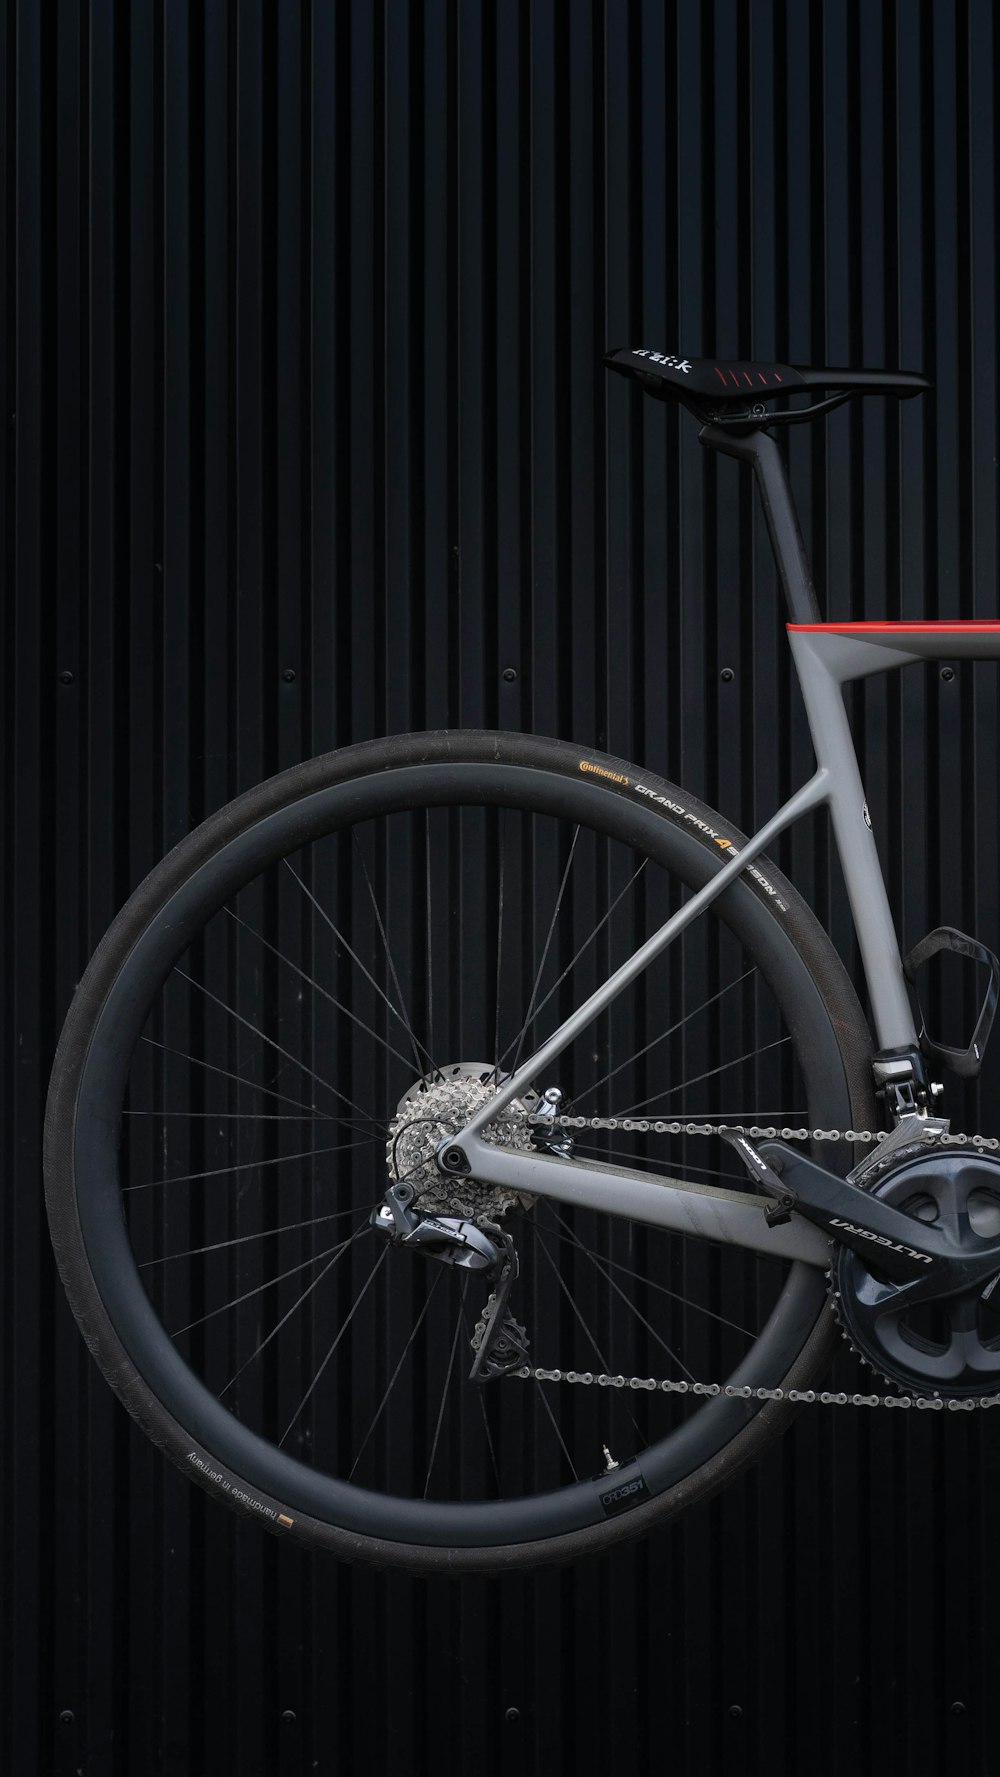 rueda de bicicleta en blanco y negro apoyada en una pared de madera negra